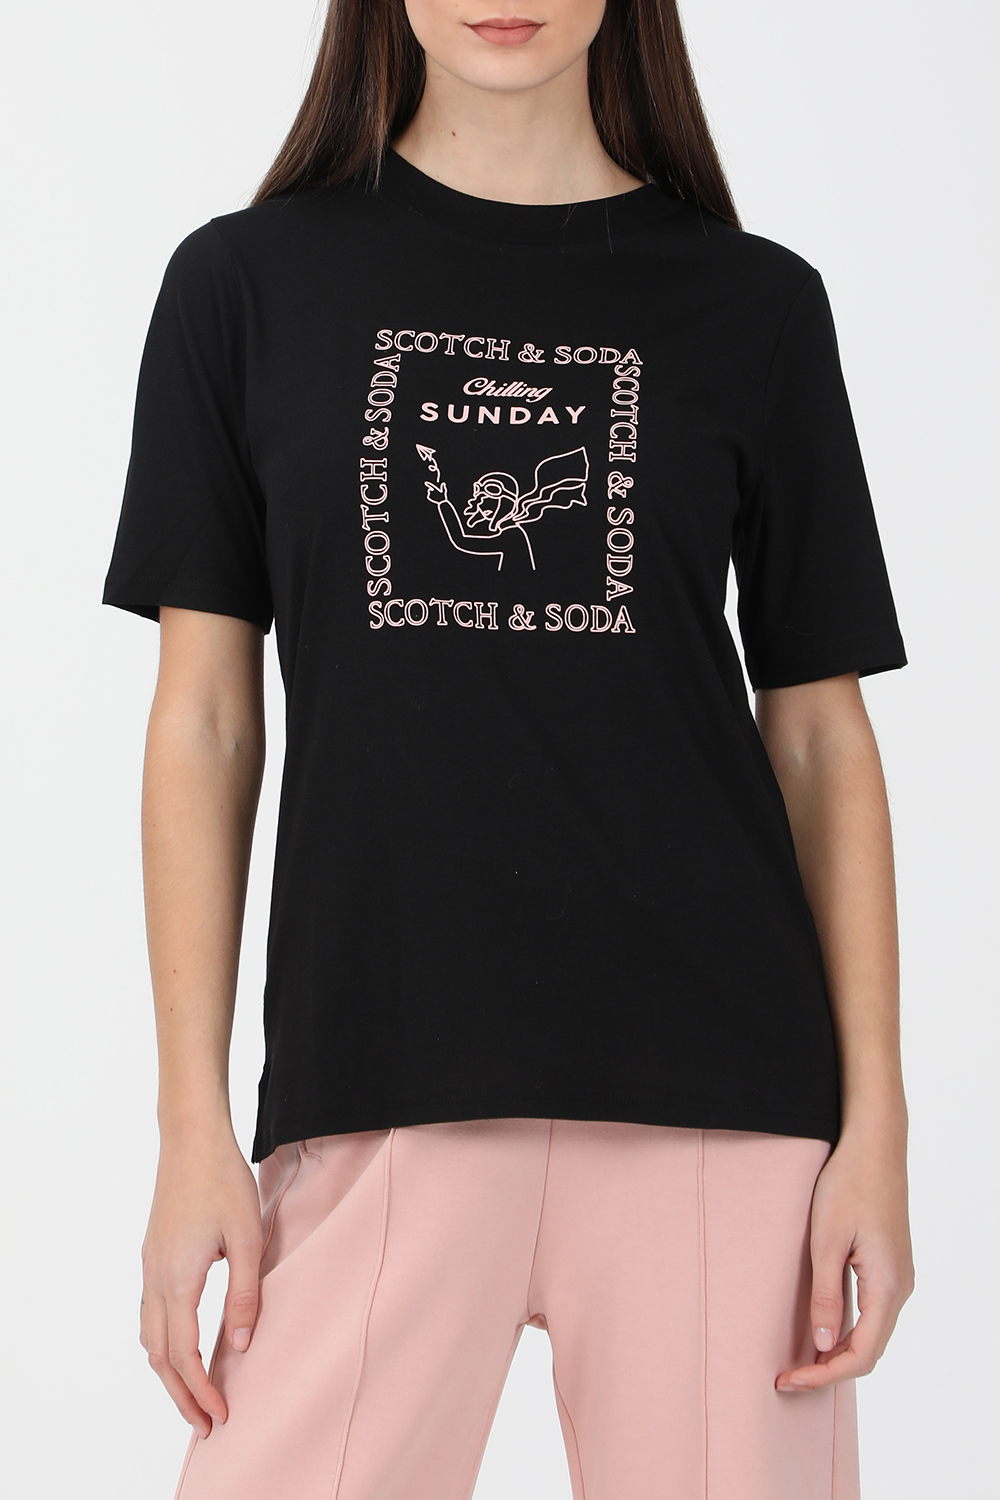 SCOTCH & SODA – Γυναικεία κοντομάνικη μπλούζα SCOTCH & SODA μαύρη 1821057.0-7171